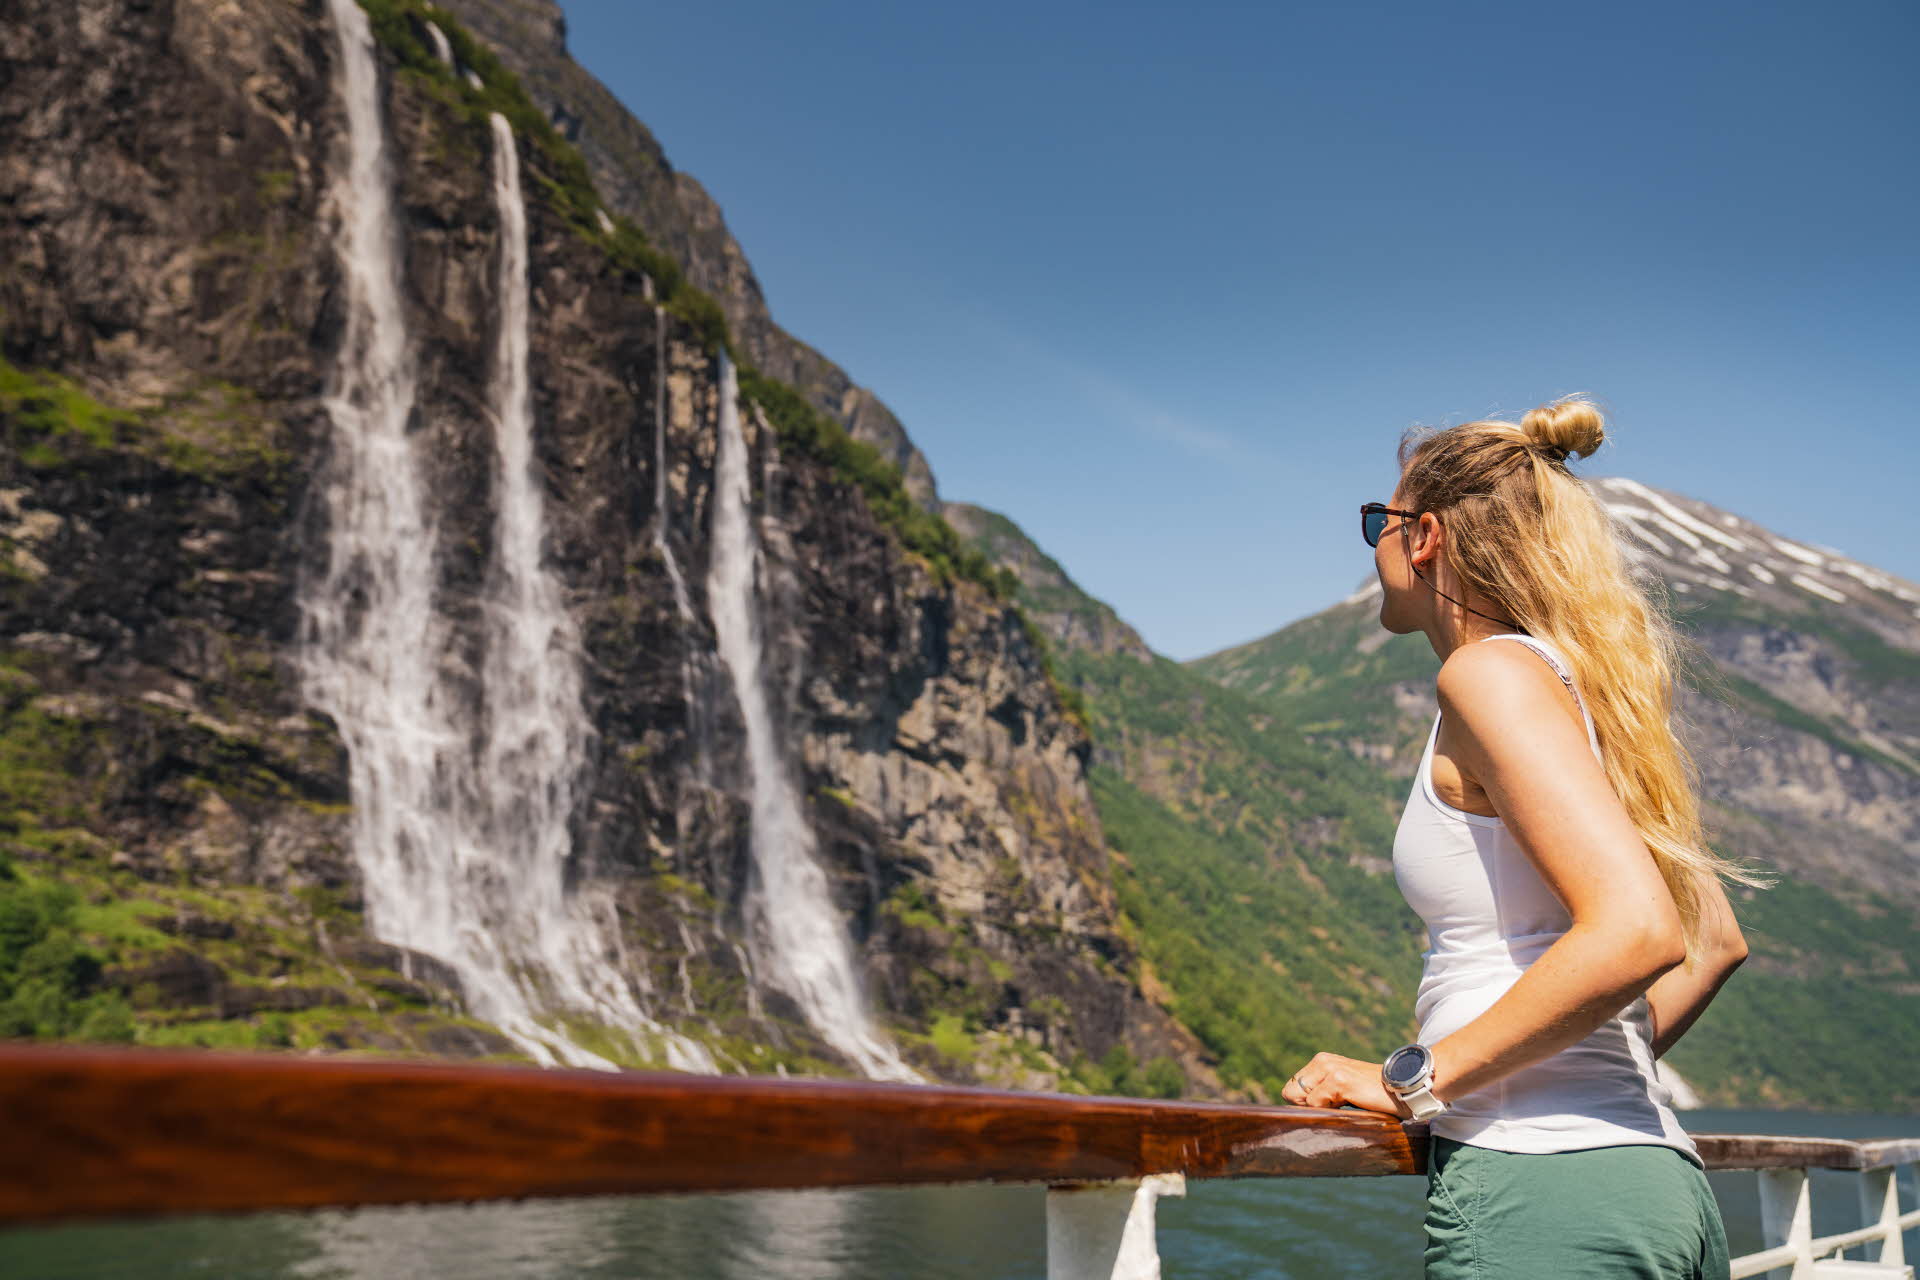 Une femme vue de côté regarde une cascade du Geirangerfjord en se tenant à la balustrade d’un bateau